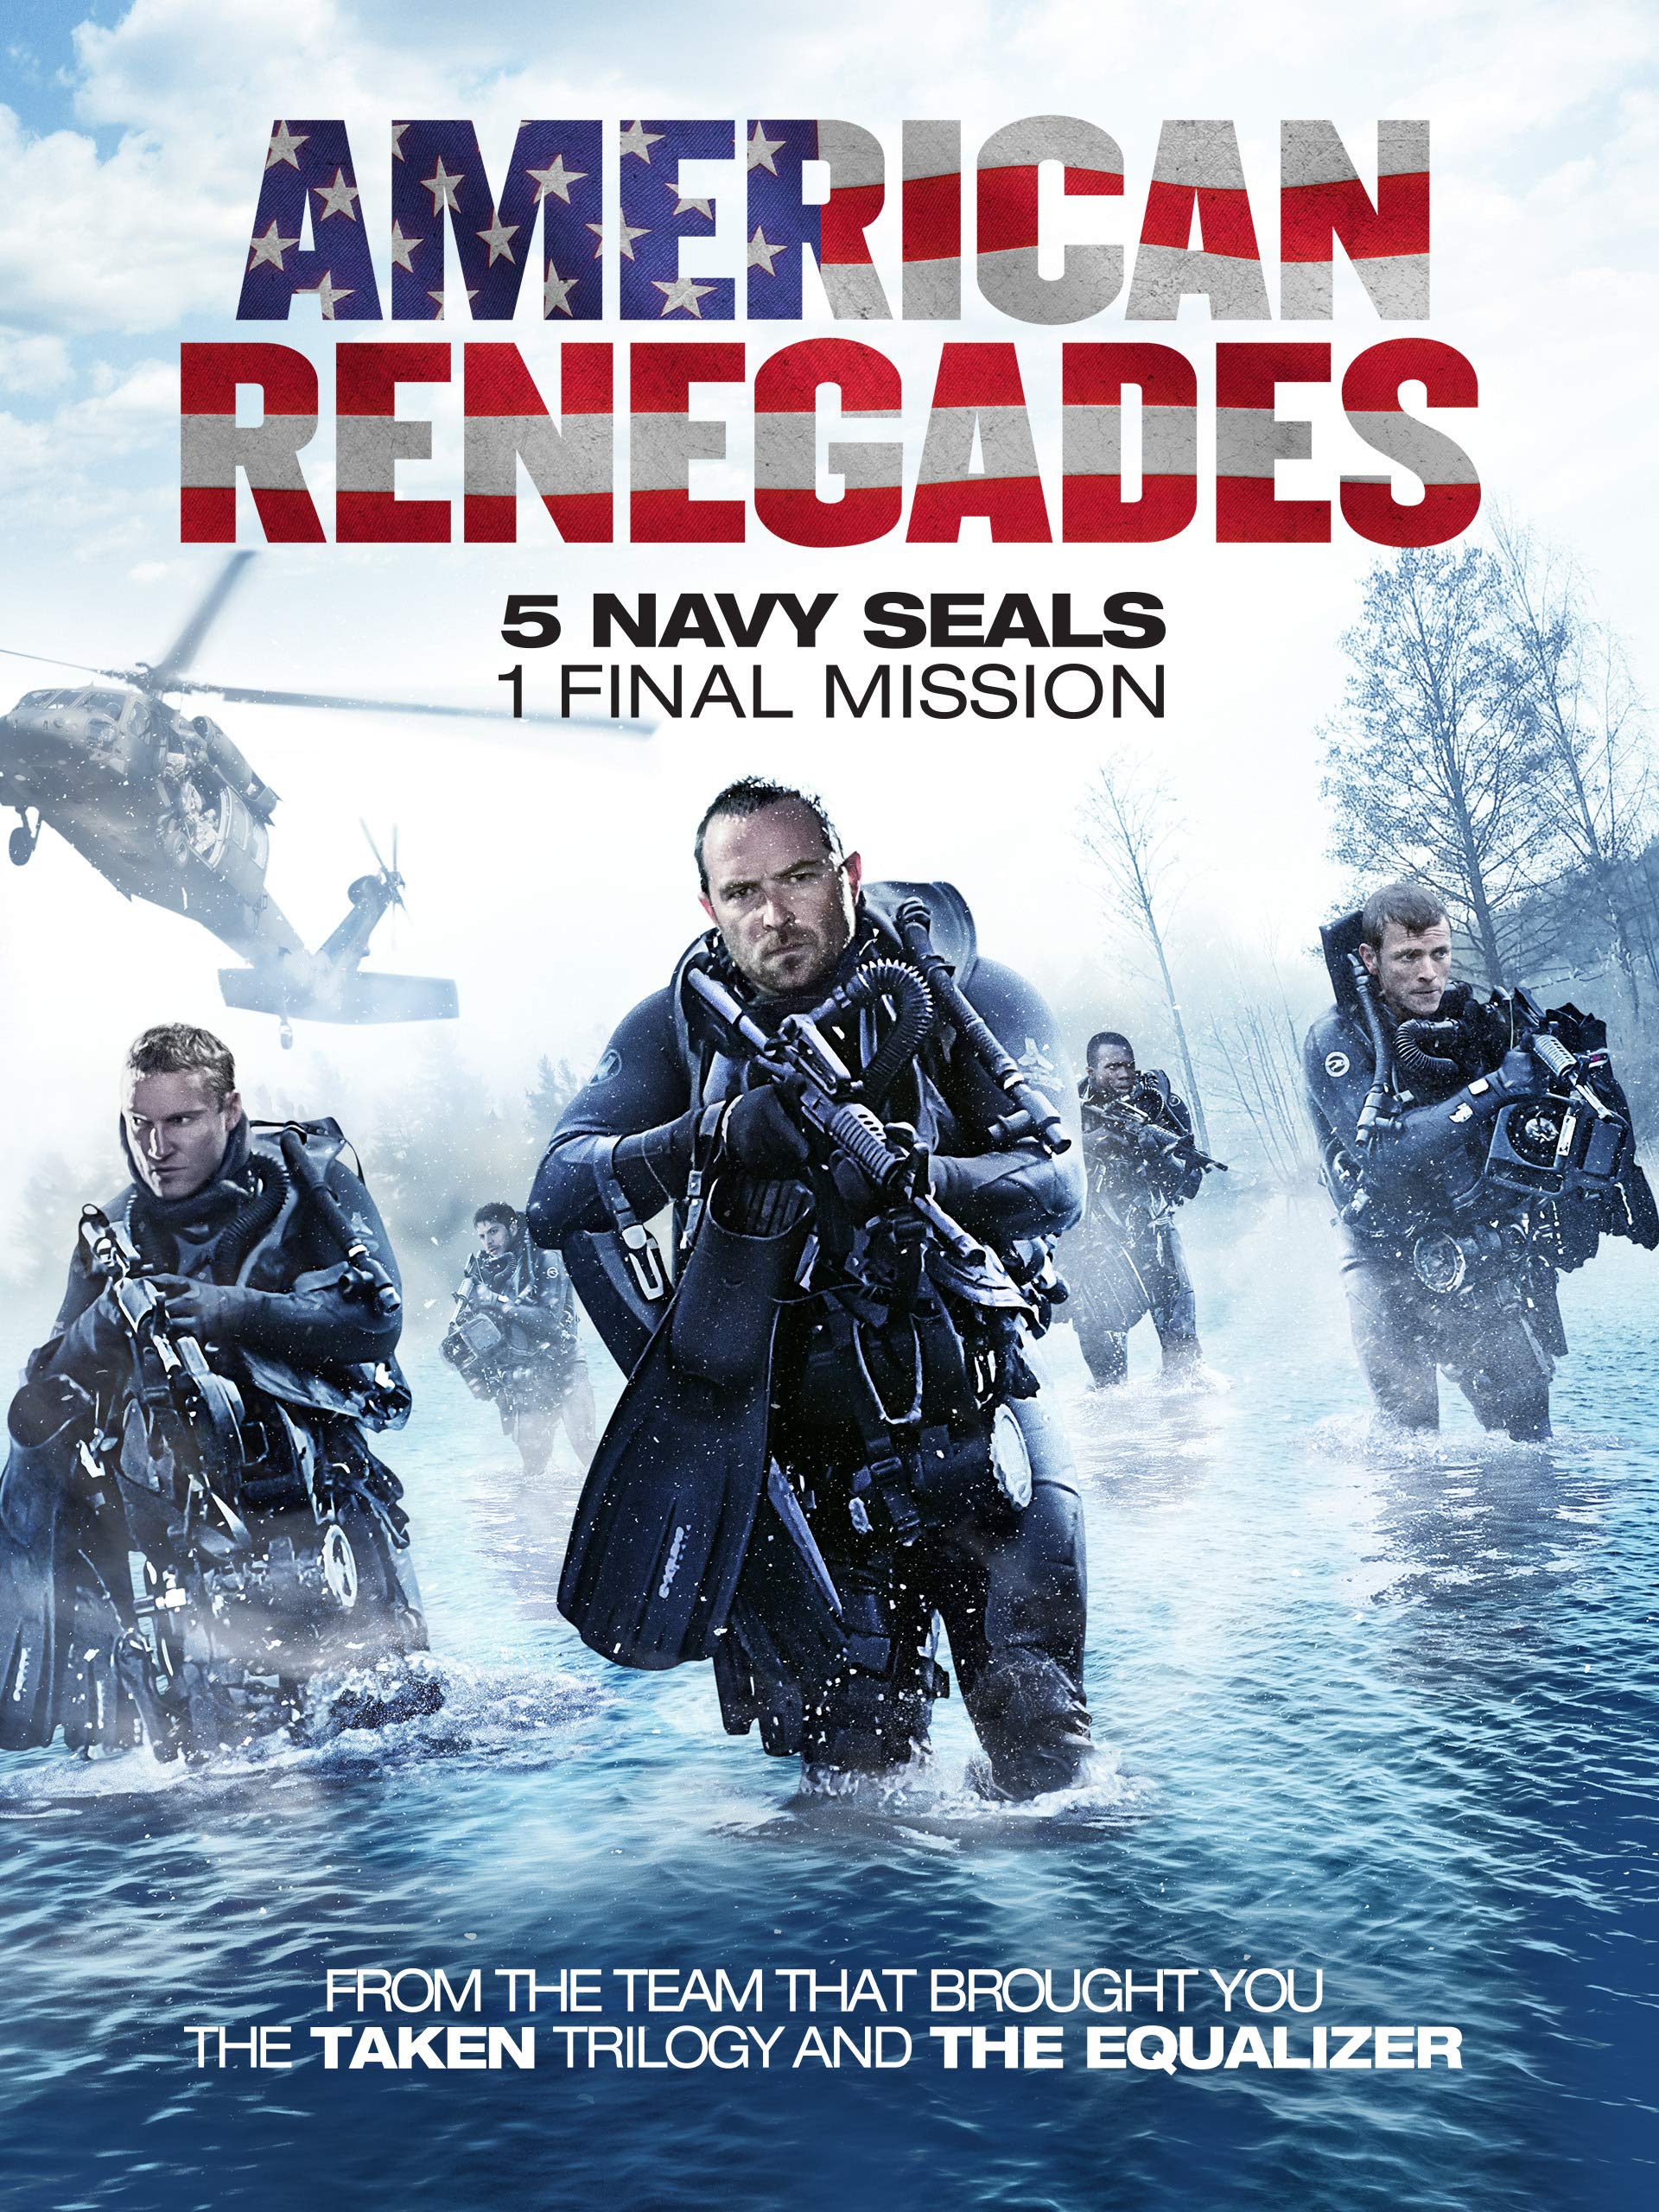 Promotional image for 'Renegade' highlighting Ferdi Fischer's stunt work.